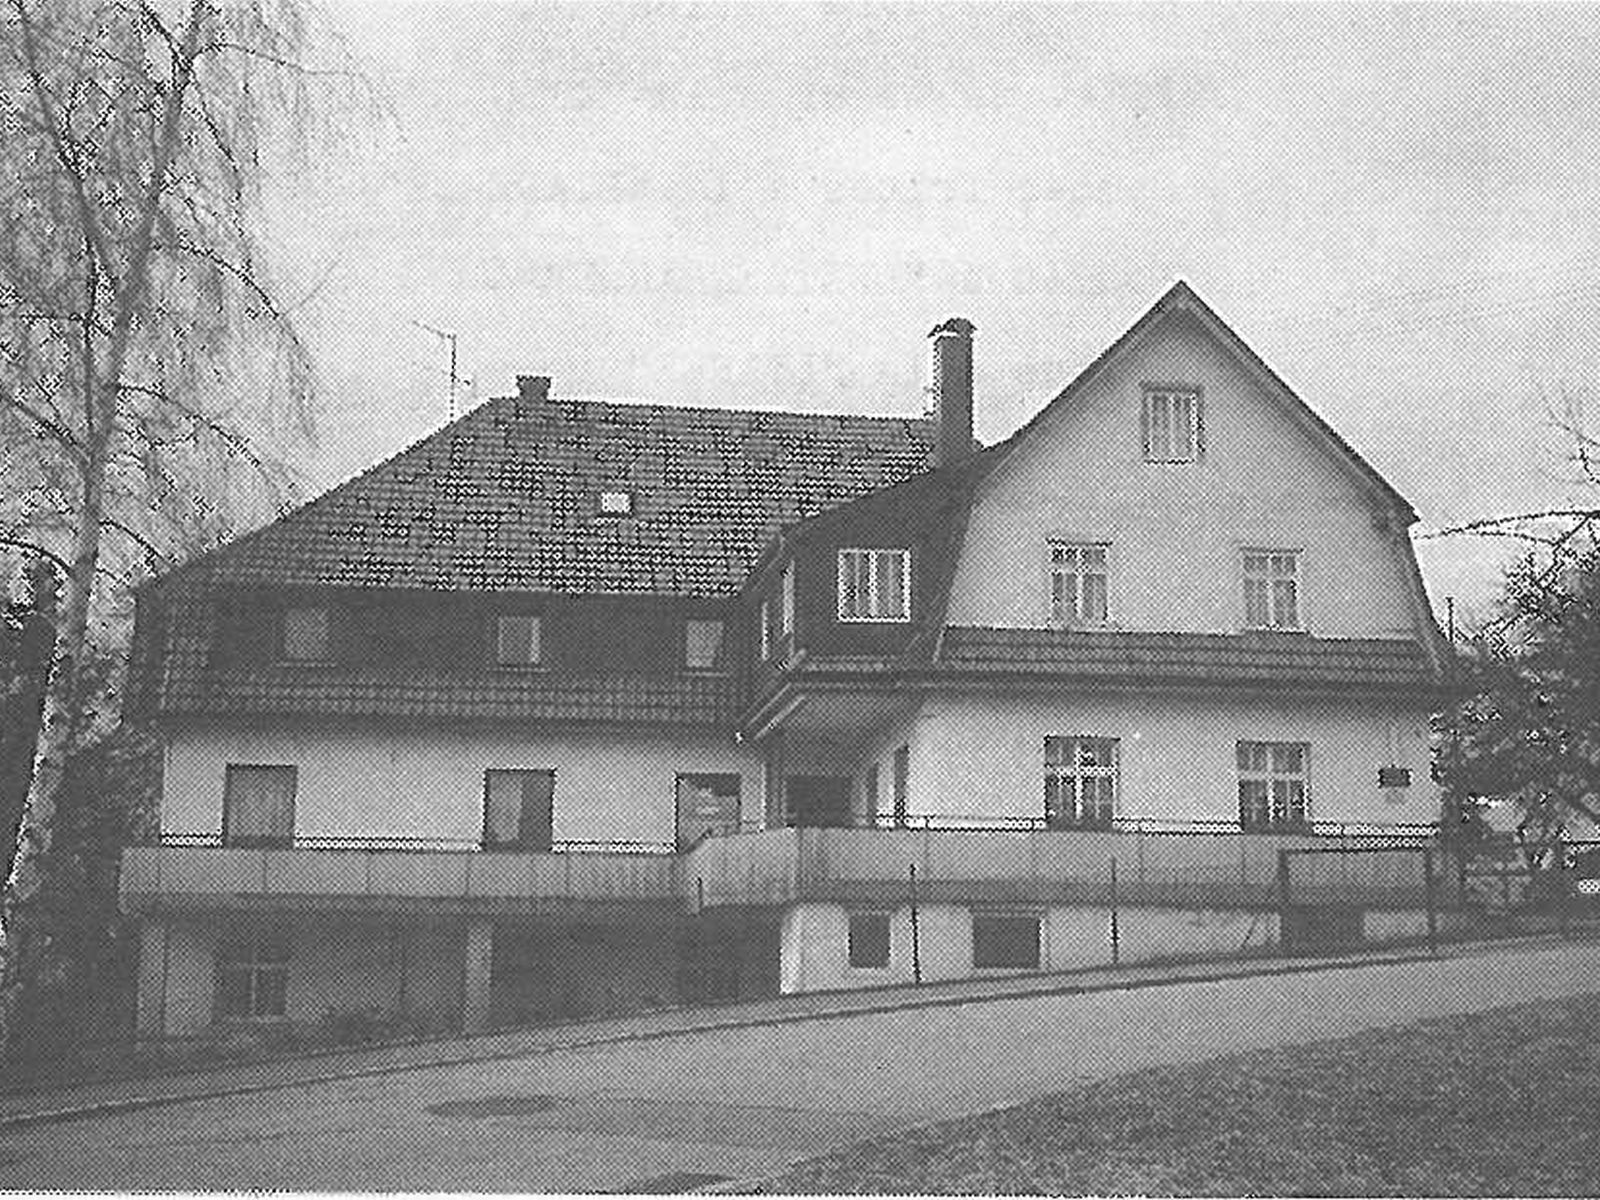  Schopflocher Skizzen Gebäude des ehemaligen Kurhauses Schübel kurz vor dem Abbruch - Bild wird mit einem Klick vergrößert 